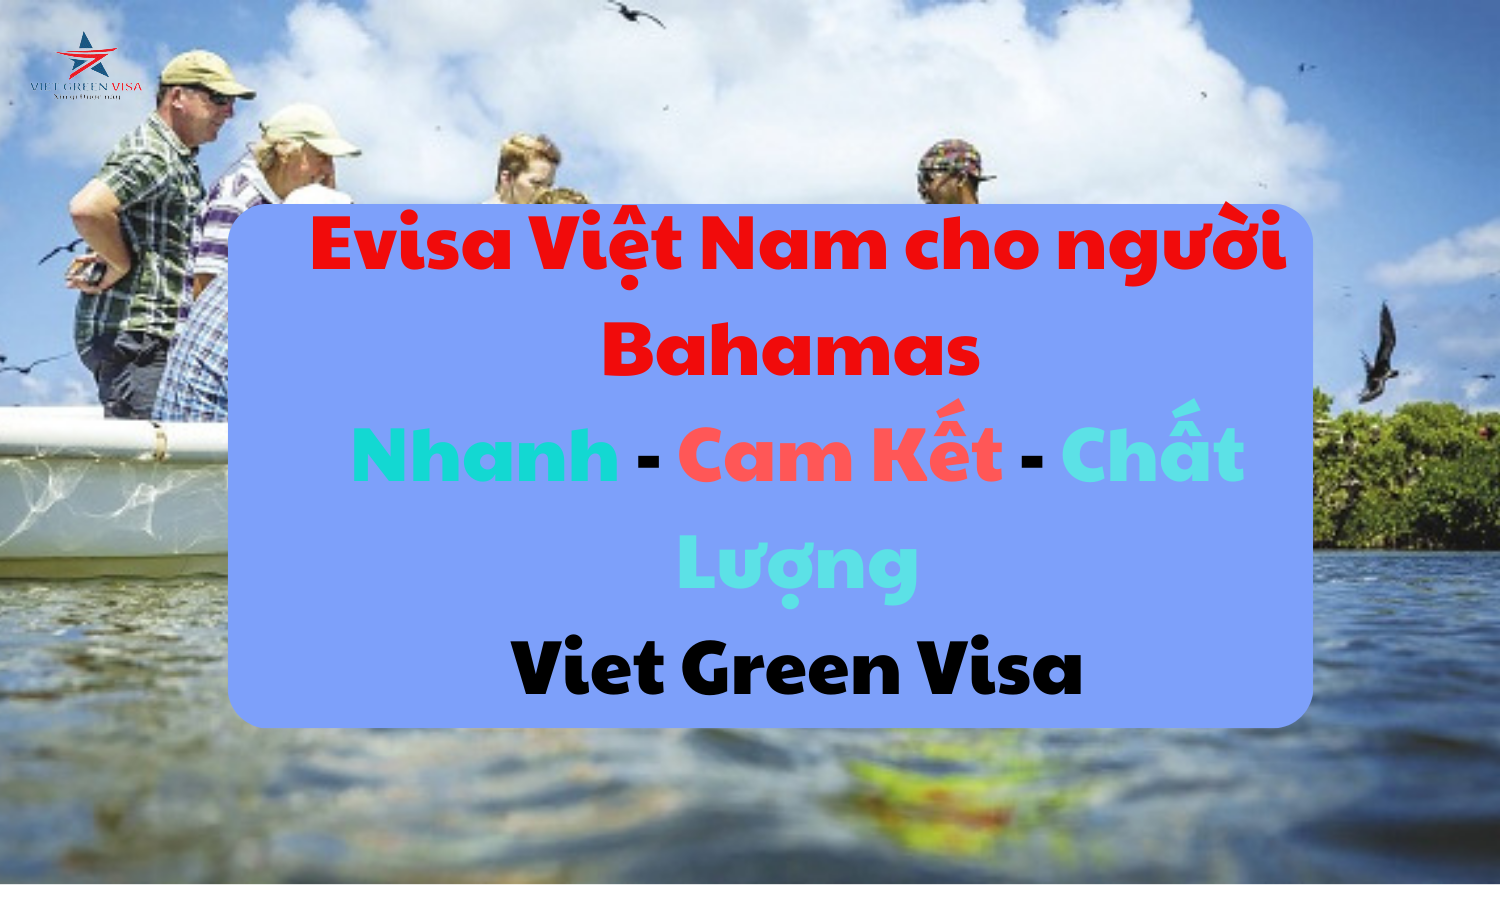 Dịch vụ xin Evisa Việt Nam 90 ngày cho quốc tịch Bahamas